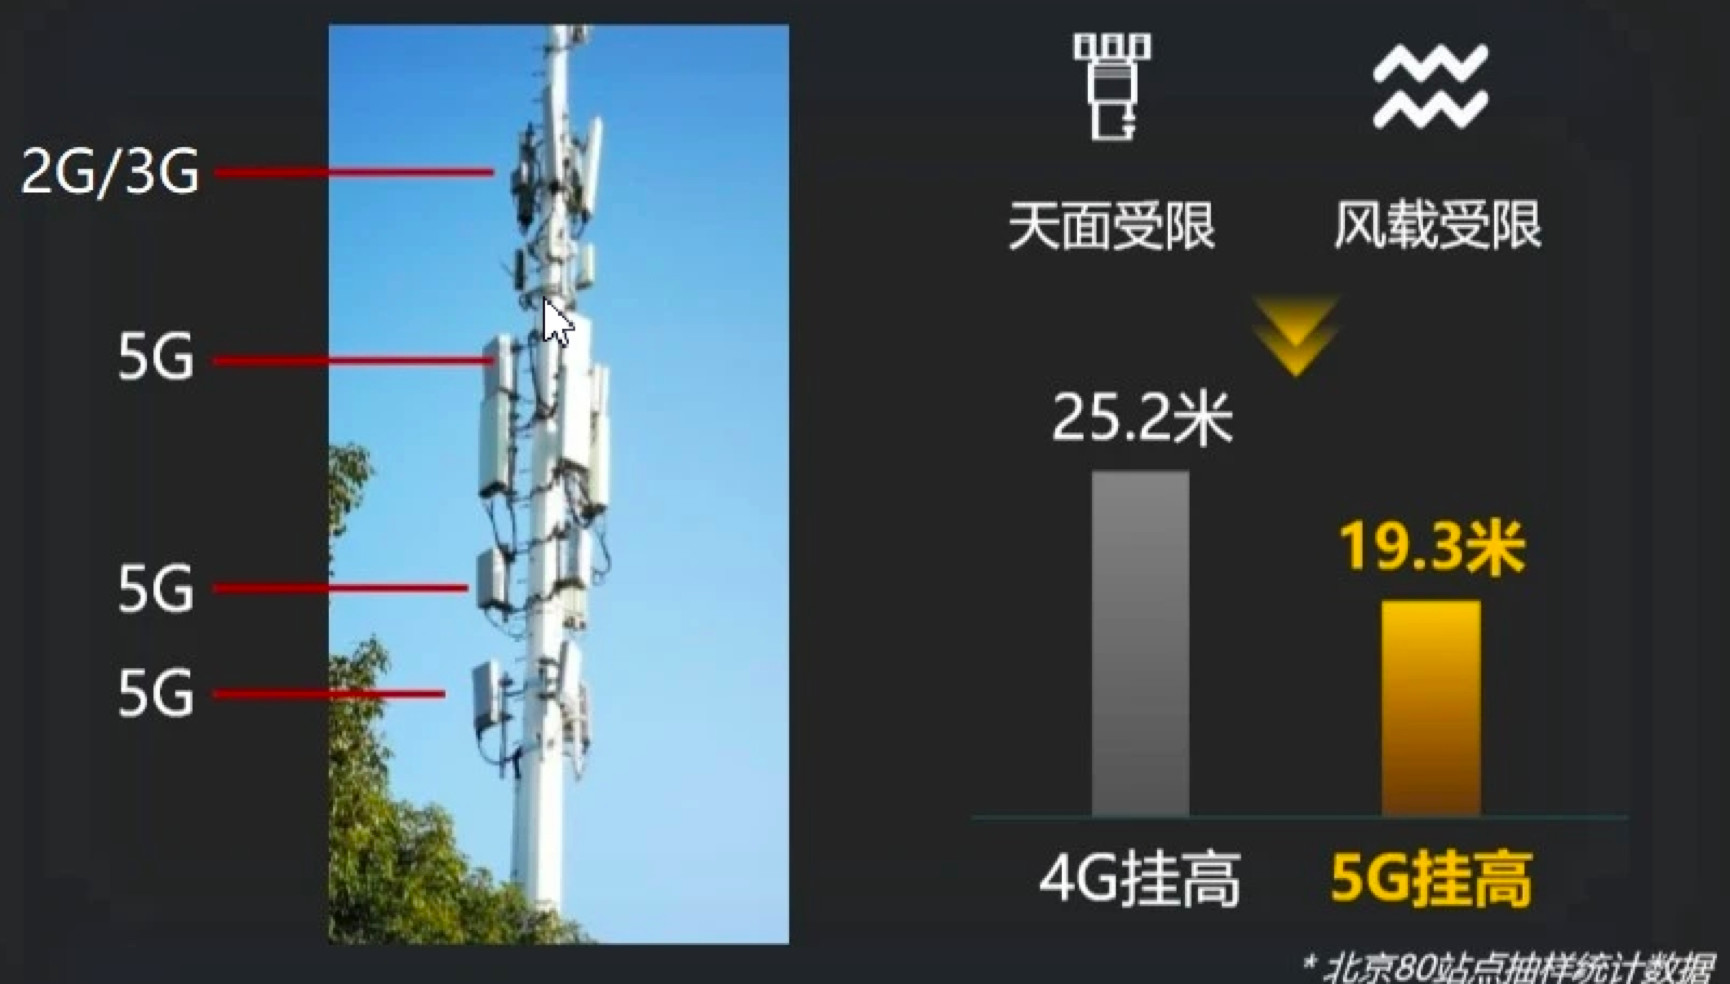 蚌埠铁塔：5G新时代引擎，连接历史与未来  第1张